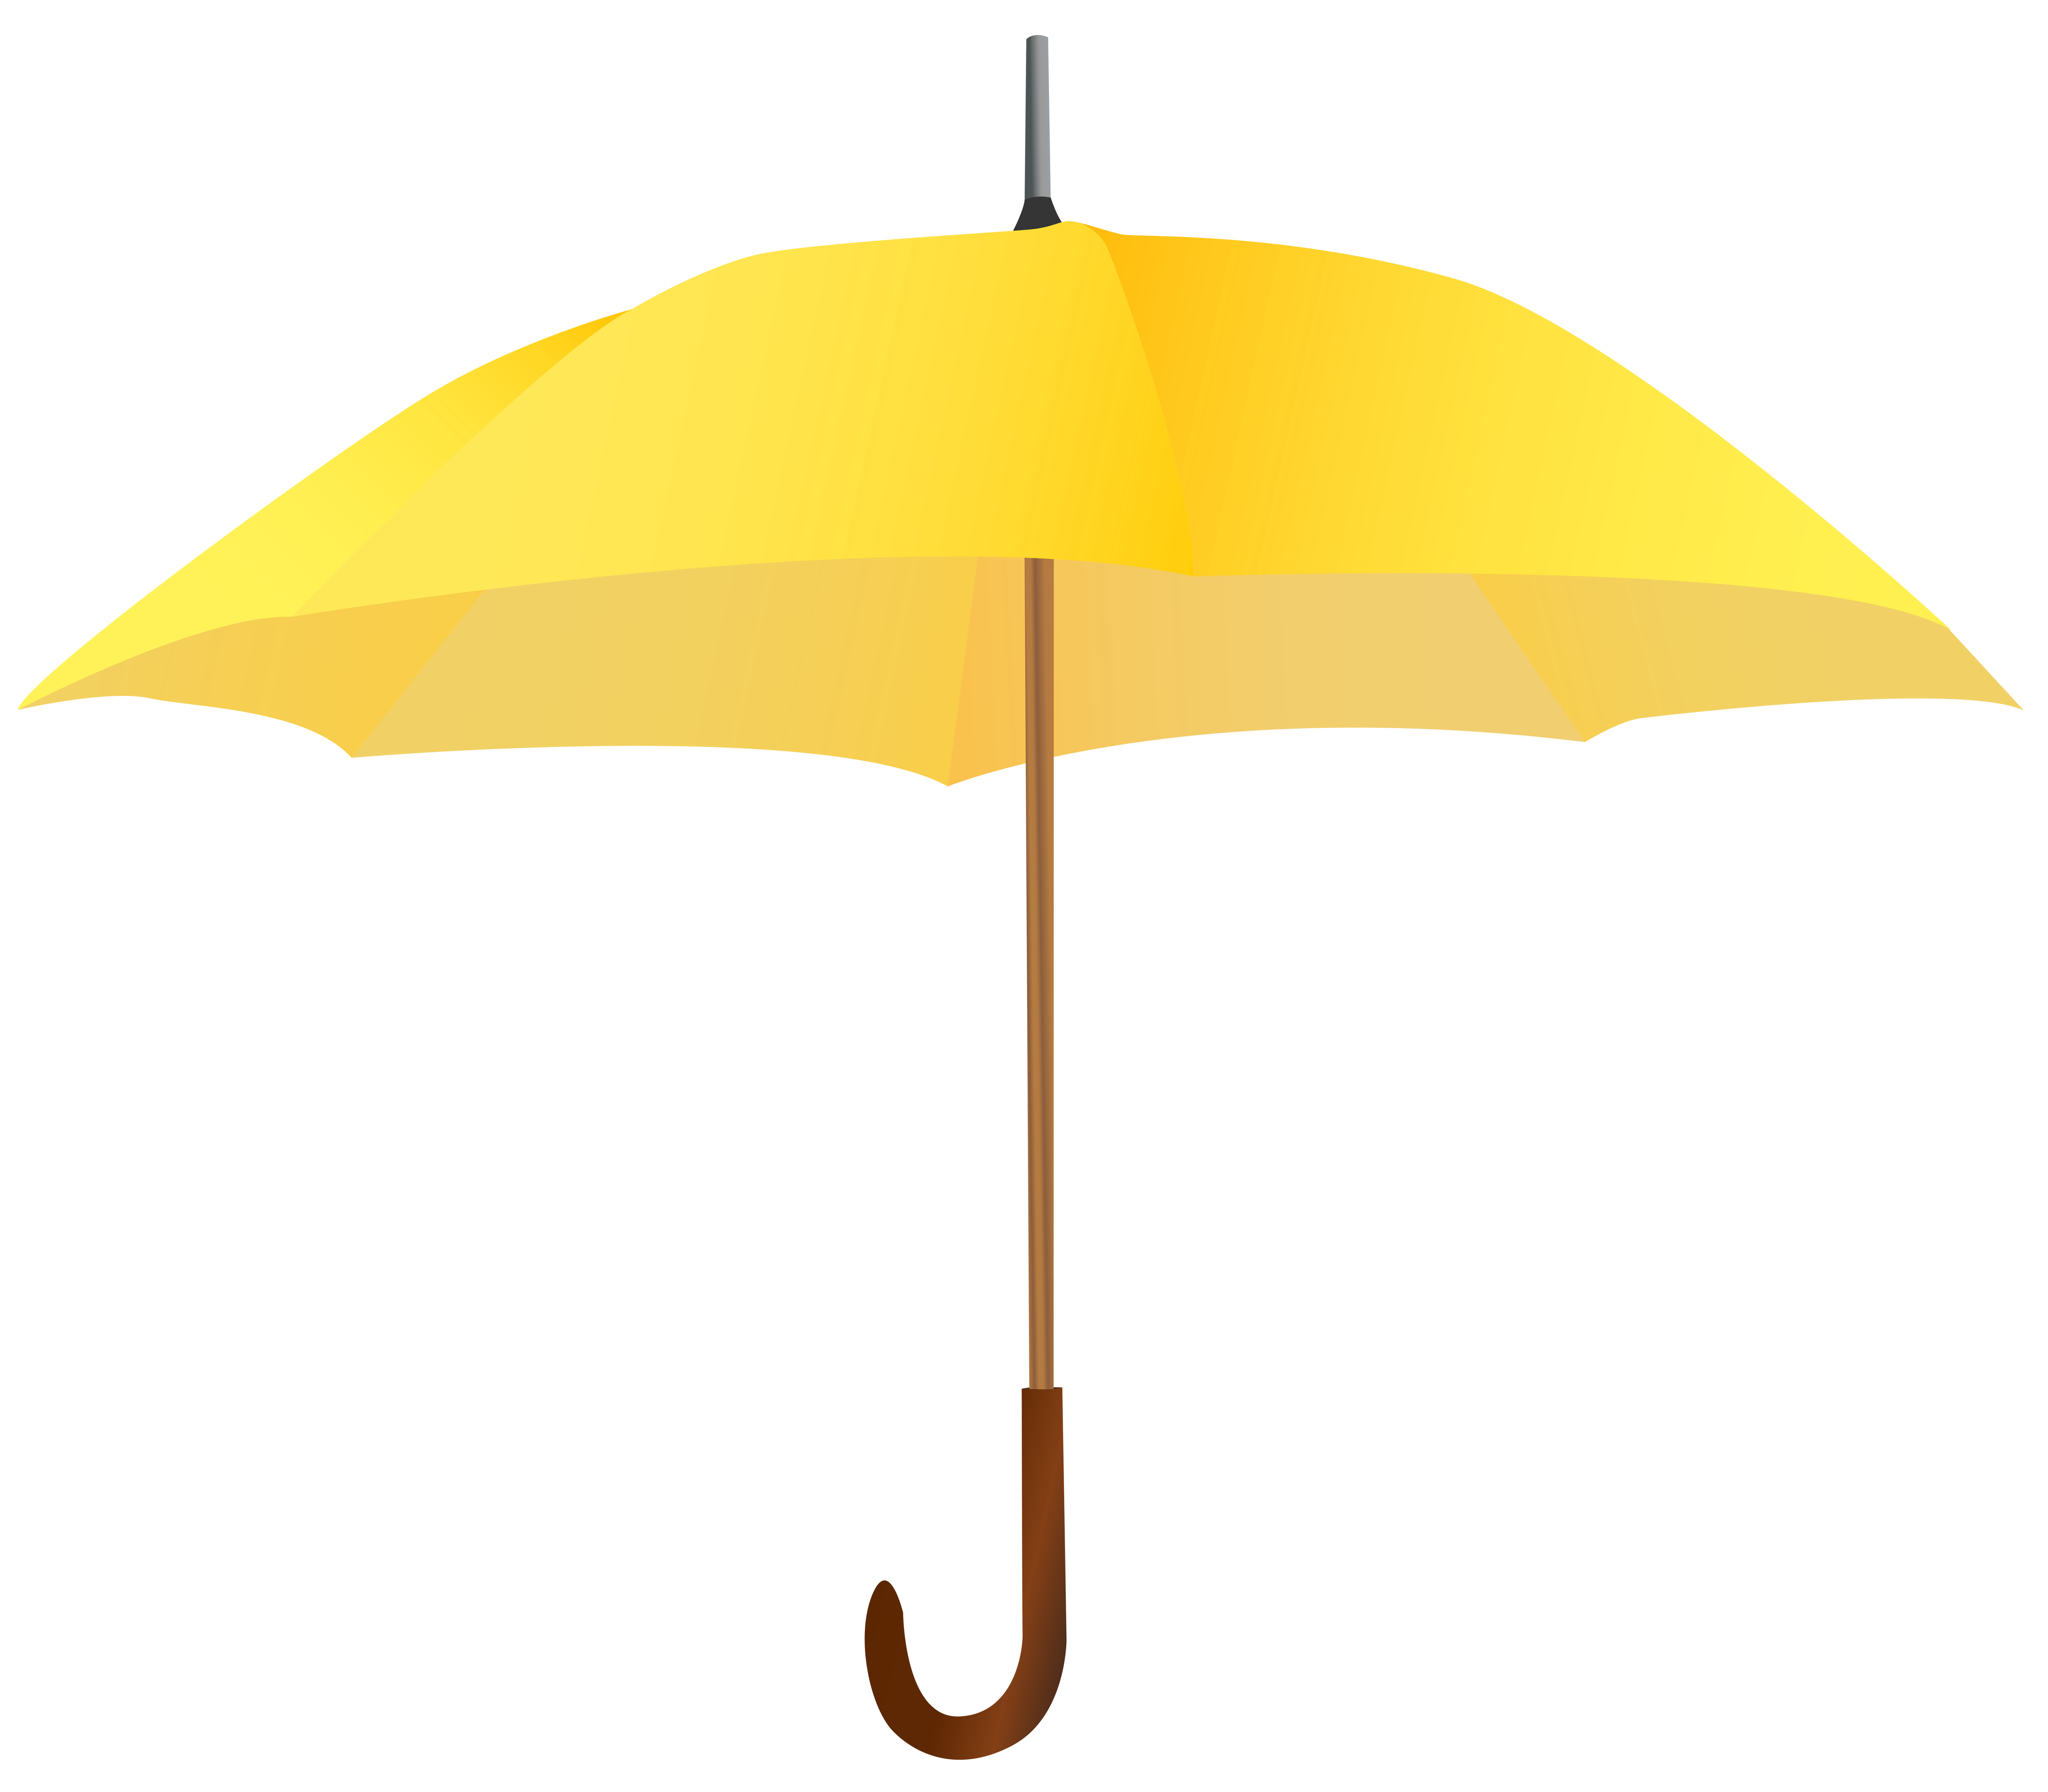 Yellow umbrella photo